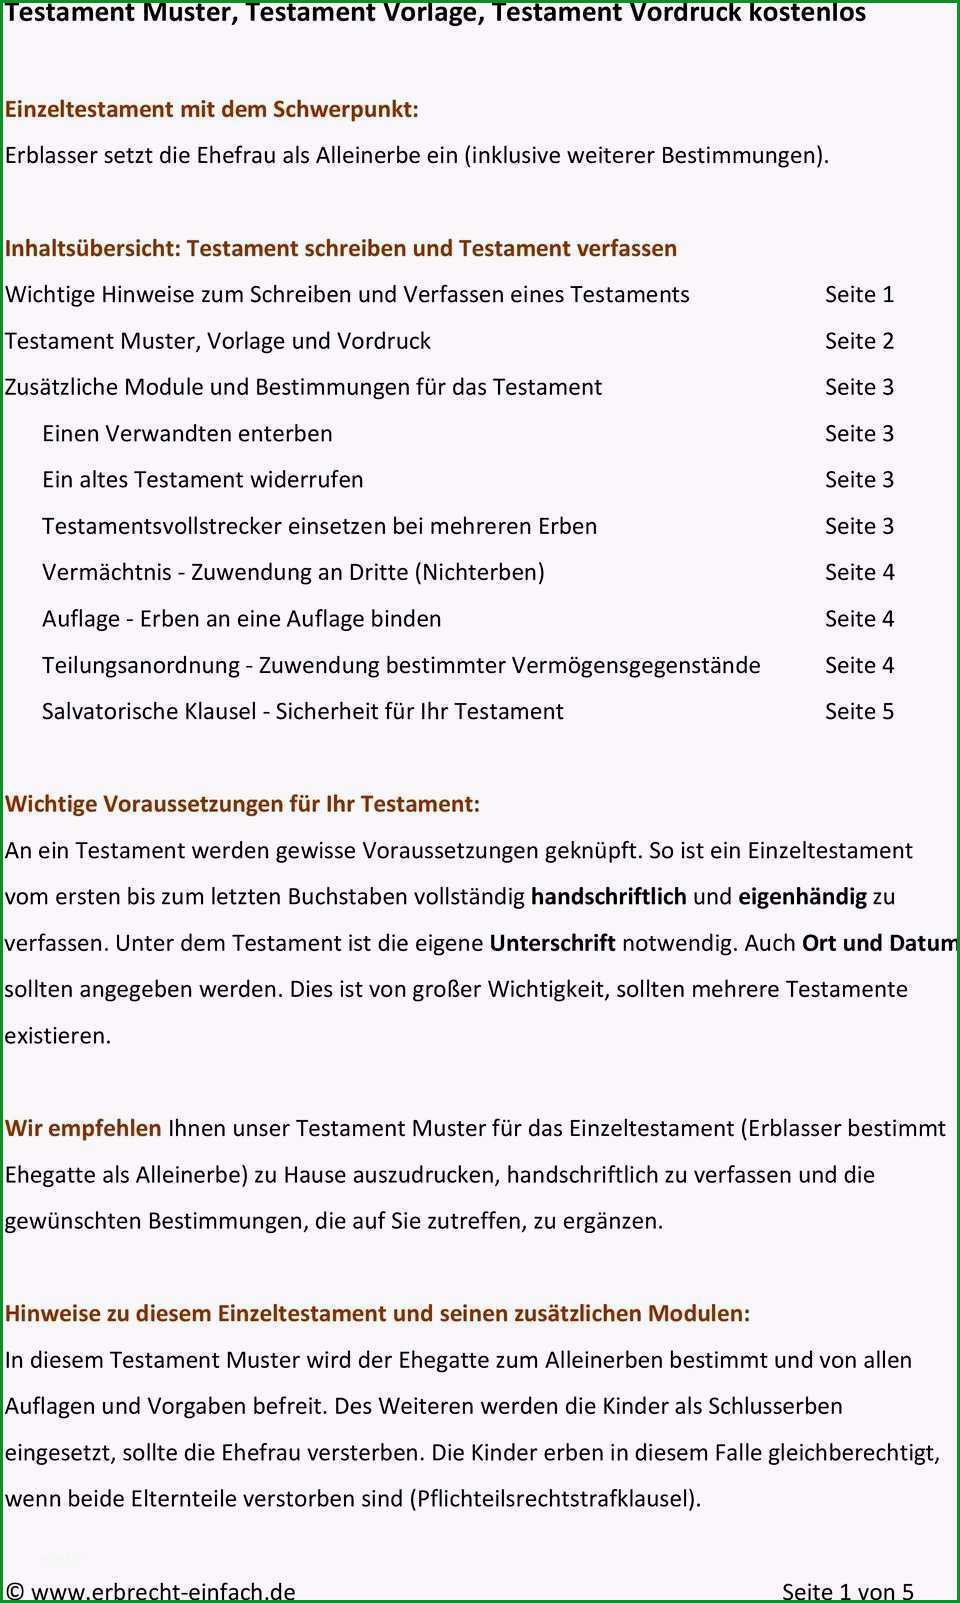 berliner testament vorlage kostenlos pdf inspiration testament muster testament vorlage testament vordruck